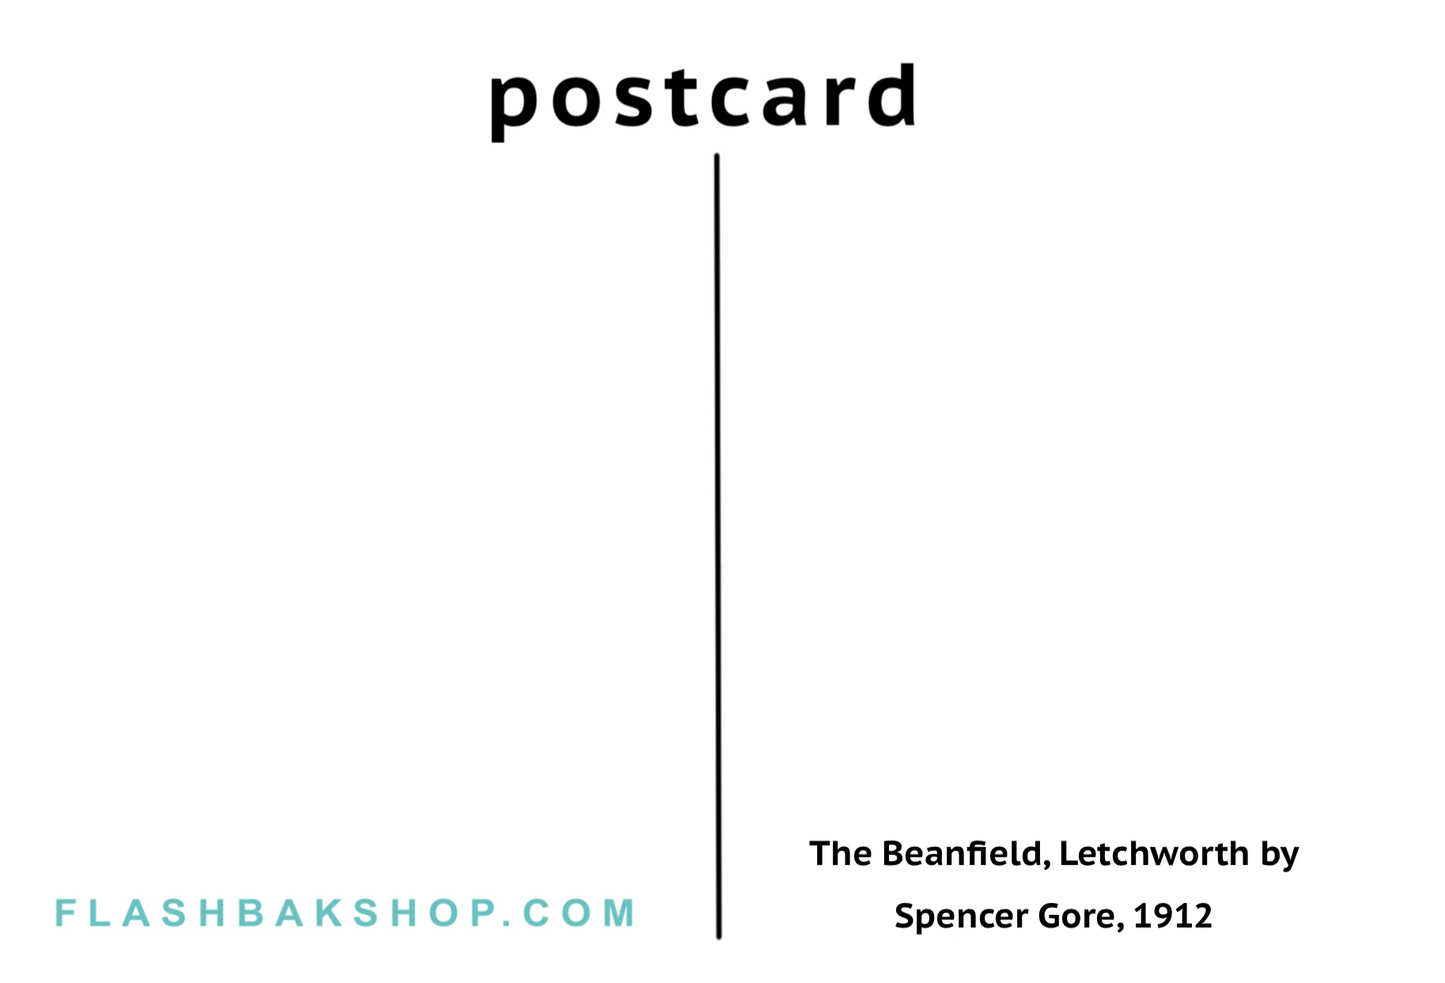 Le Beanfield, Letchworth par Spencer Gore, 1912 - Carte postale